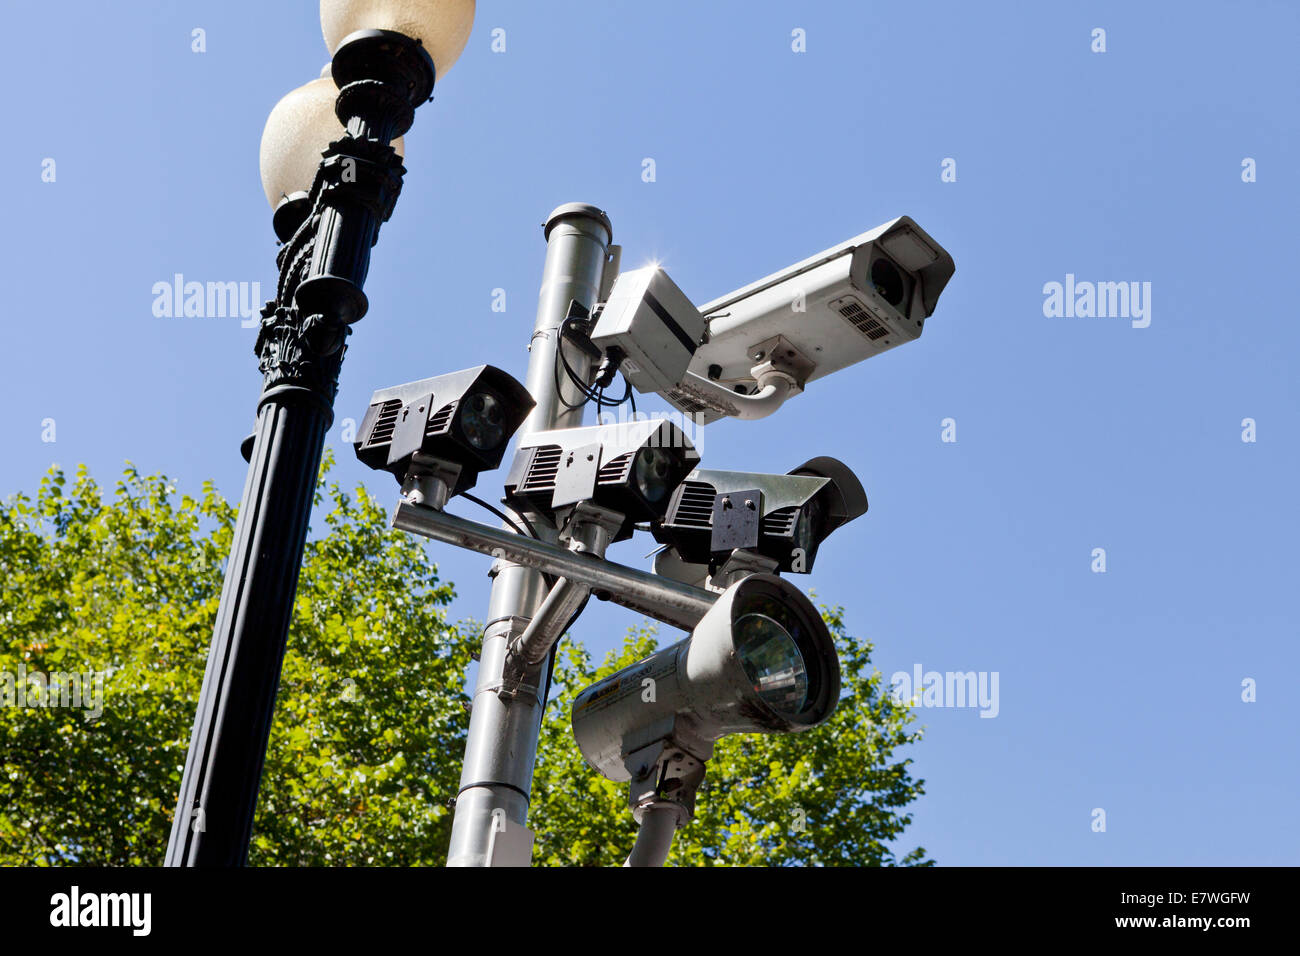 Le trafic et le numéro de plaque de voiture automatique des caméras de reconnaissance - Washington, DC USA Banque D'Images